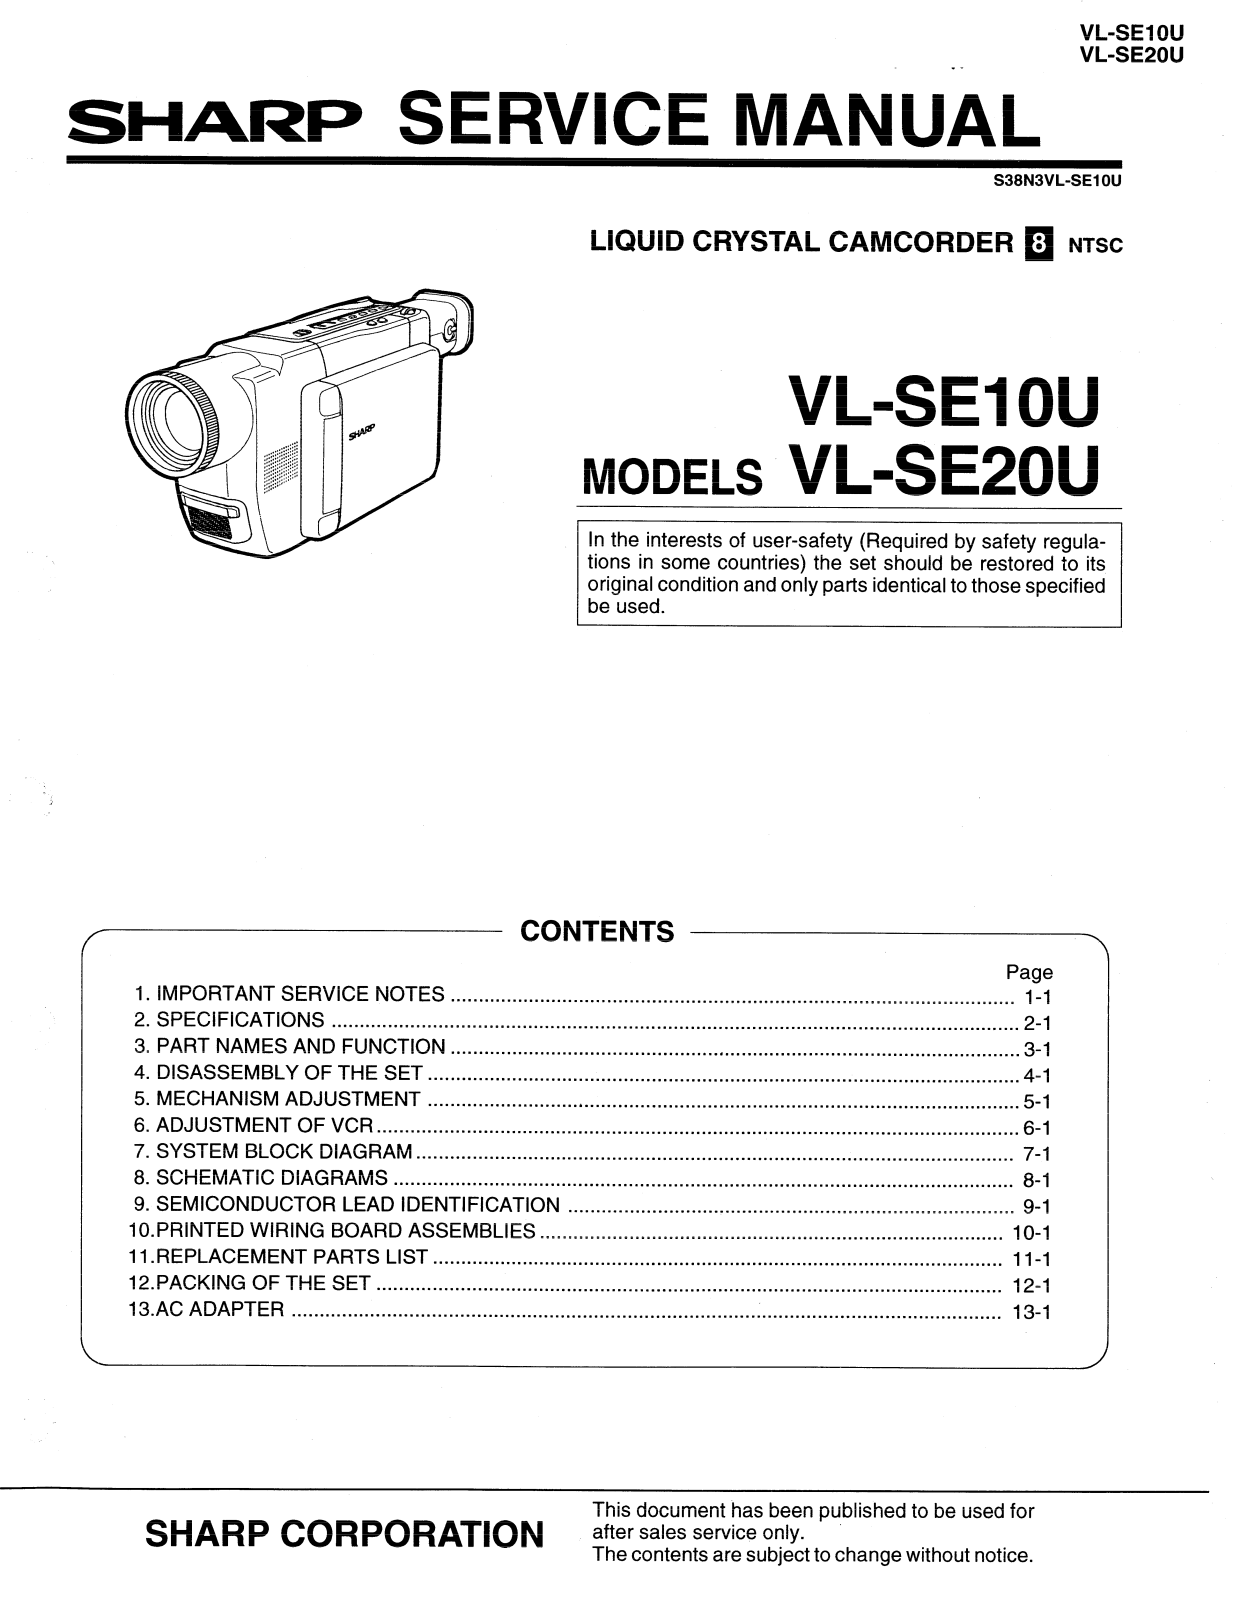 SHARP VL-SE10U, VL-SE20U Service Manual